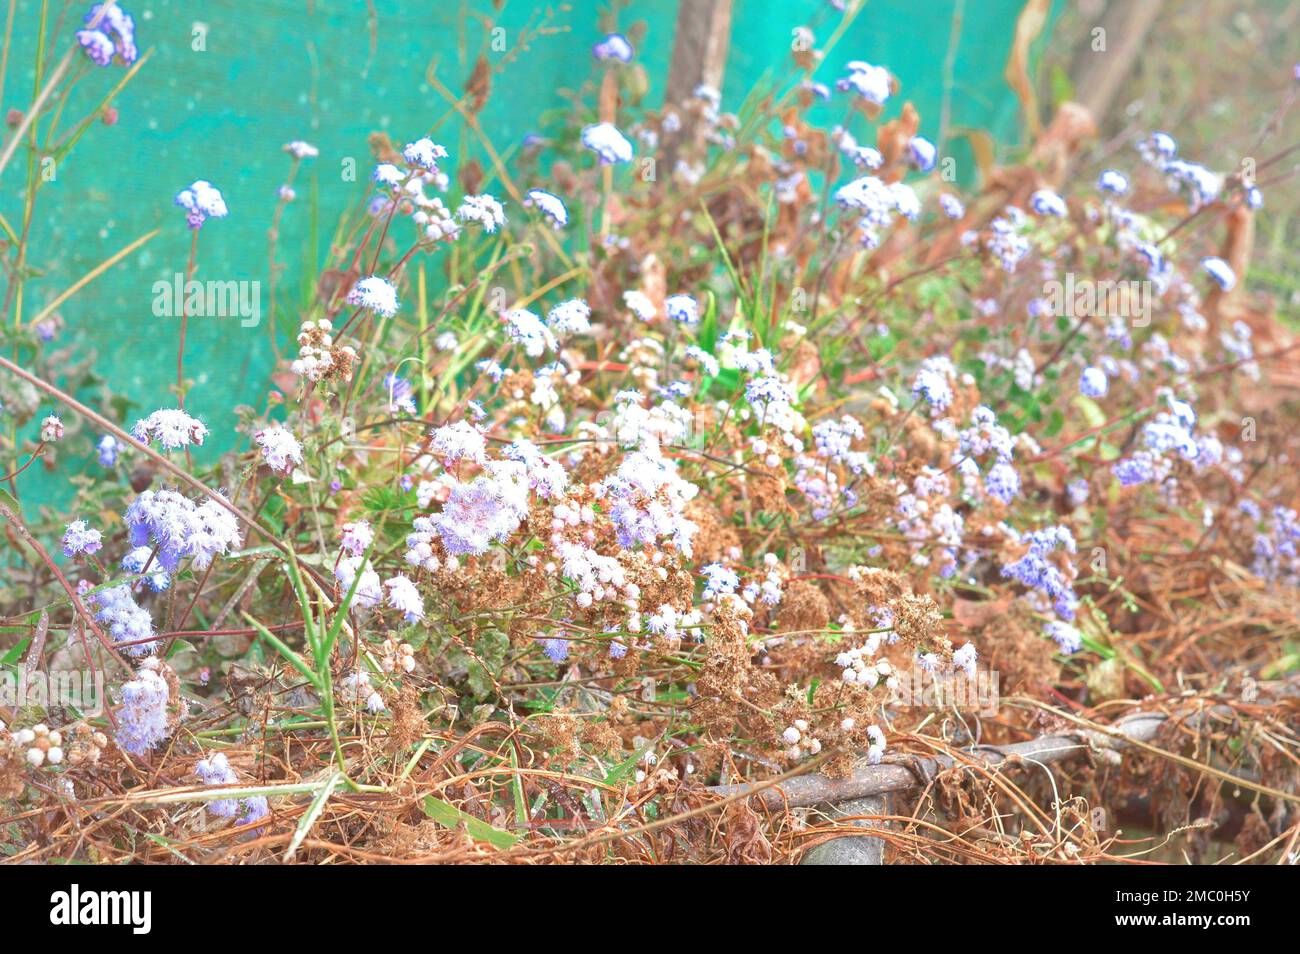 Little White lavender flower plant in a flower garden. Stock Photo